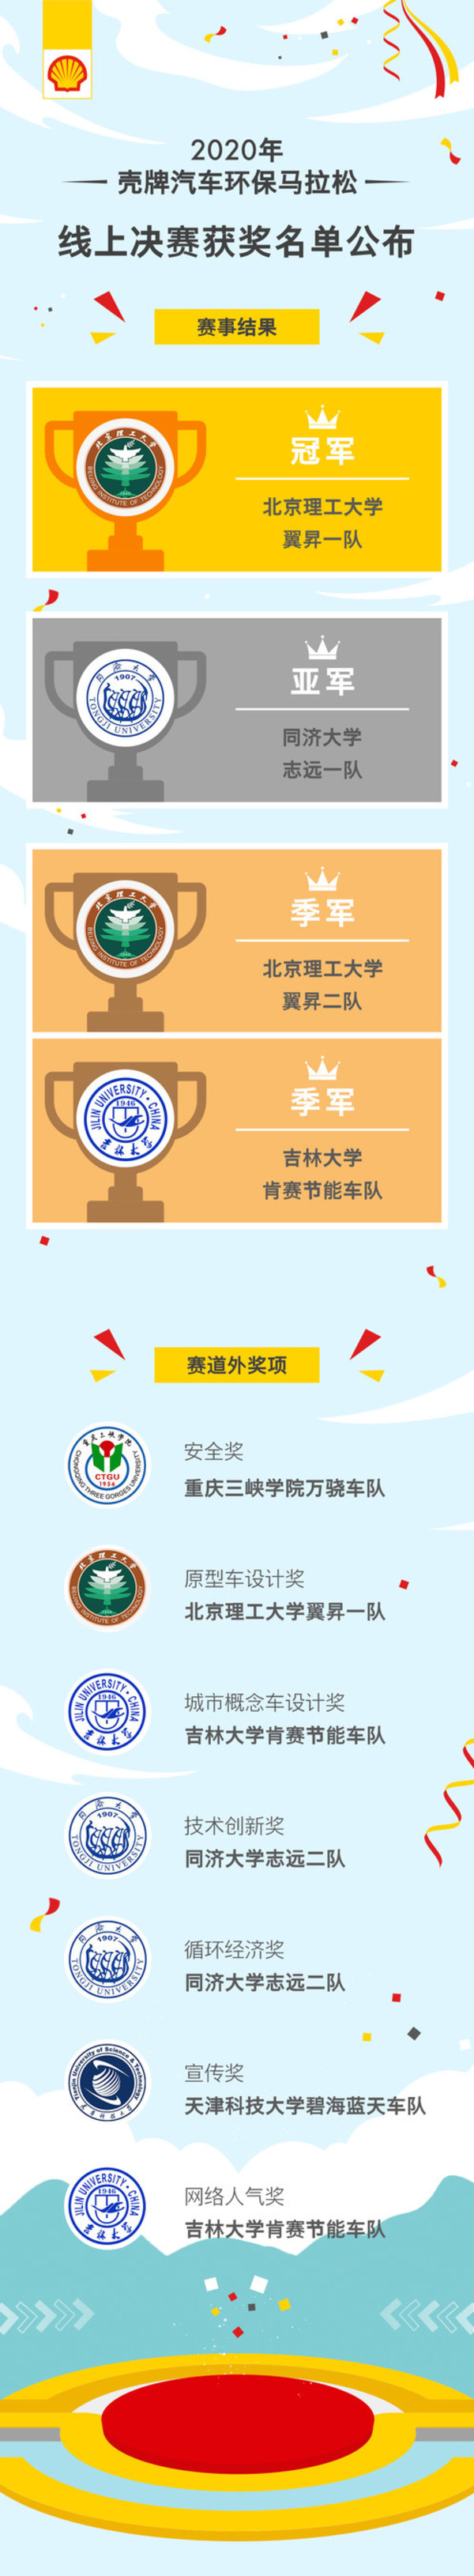 2020年“壳牌汽车环保马拉松”中国站线上决赛获奖名单